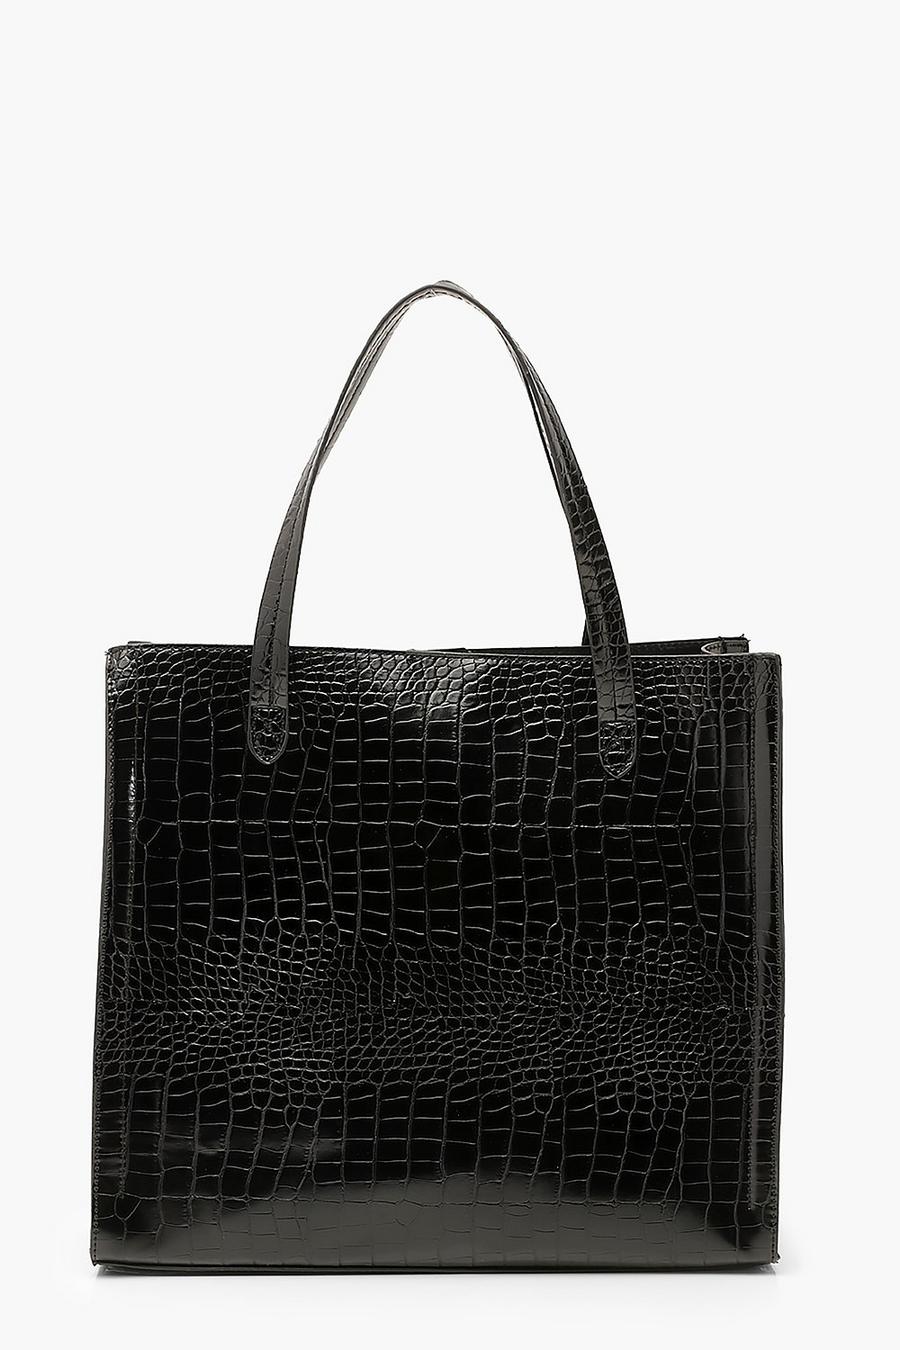 Black Croc PU Tote Shopper Bag